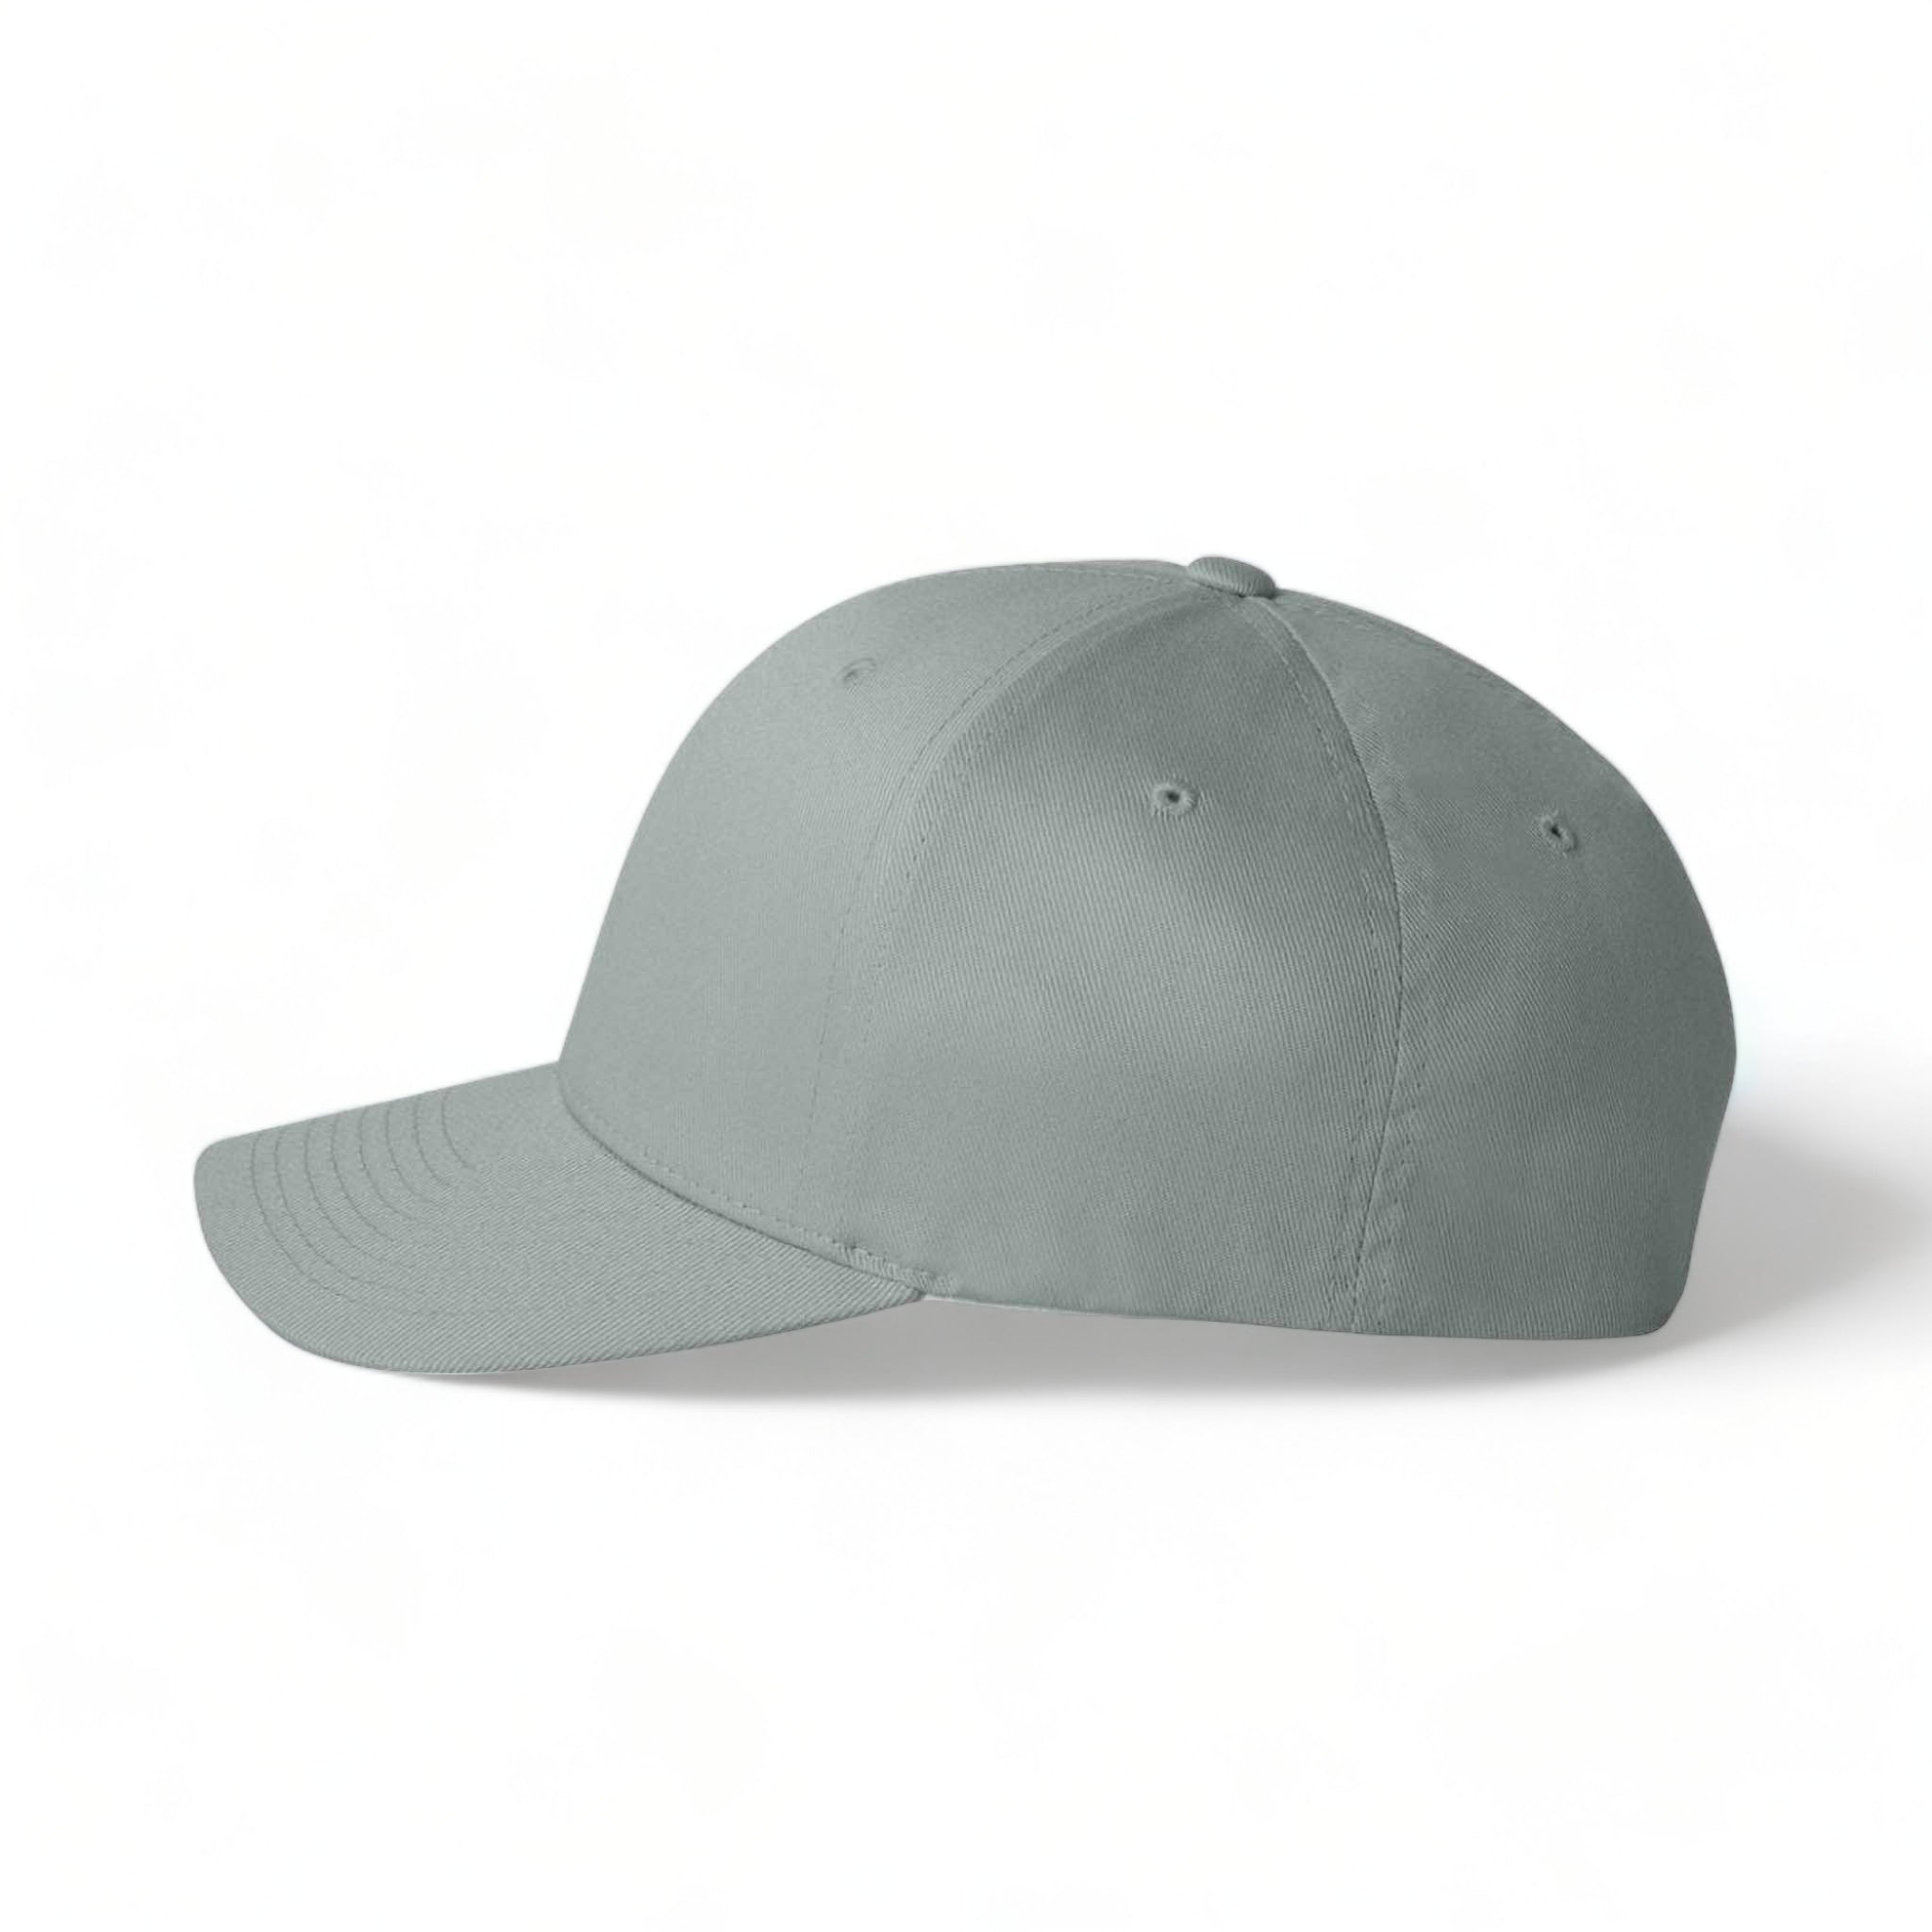 Side view of Flexfit 6277 custom hat in grey